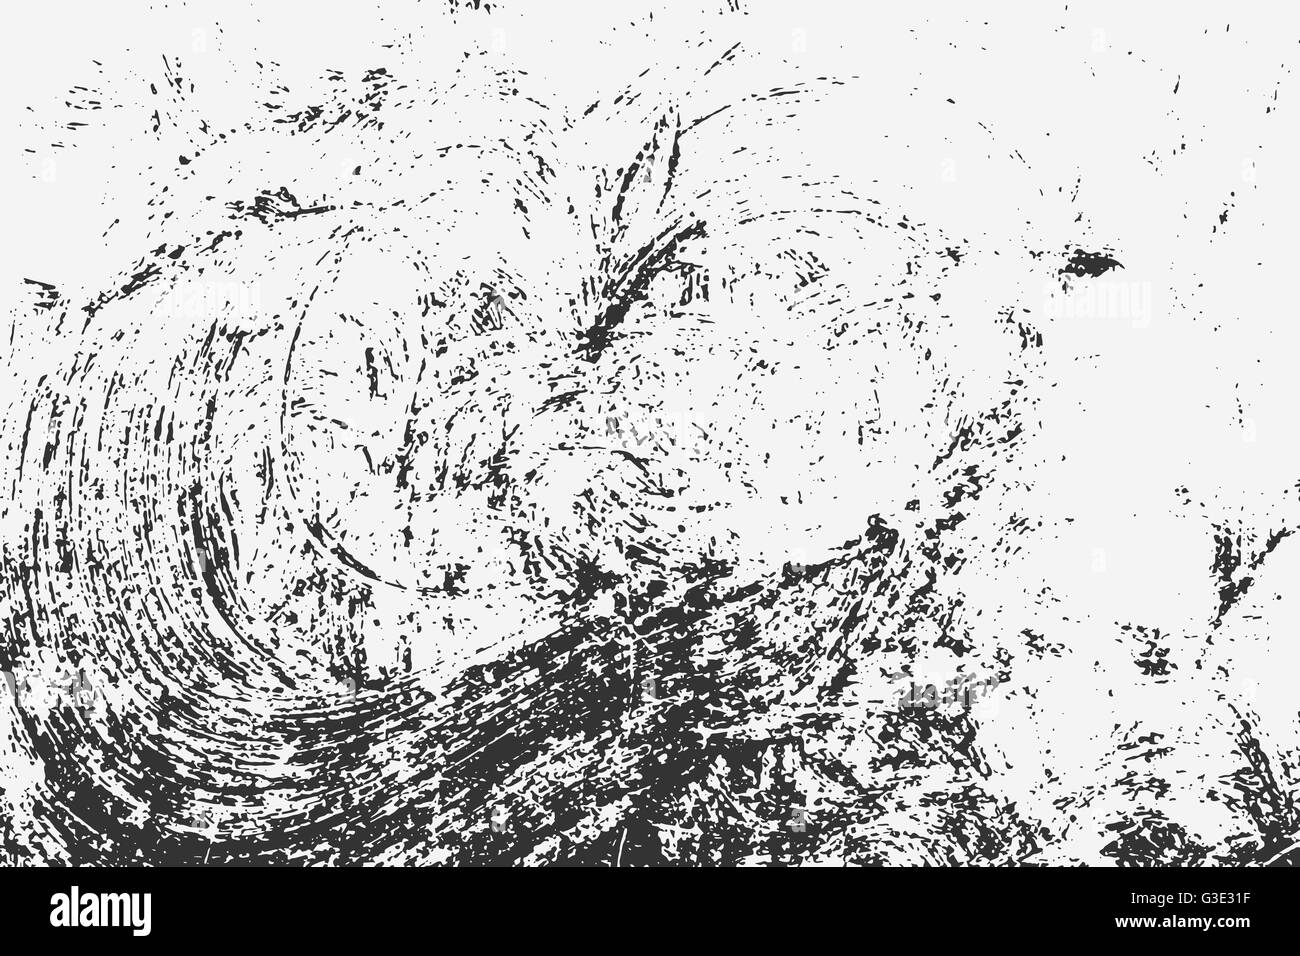 Abstract grunge background. Tableau noir grunge texture. Vector illustration of black abstract grunge fond pour votre conception Illustration de Vecteur